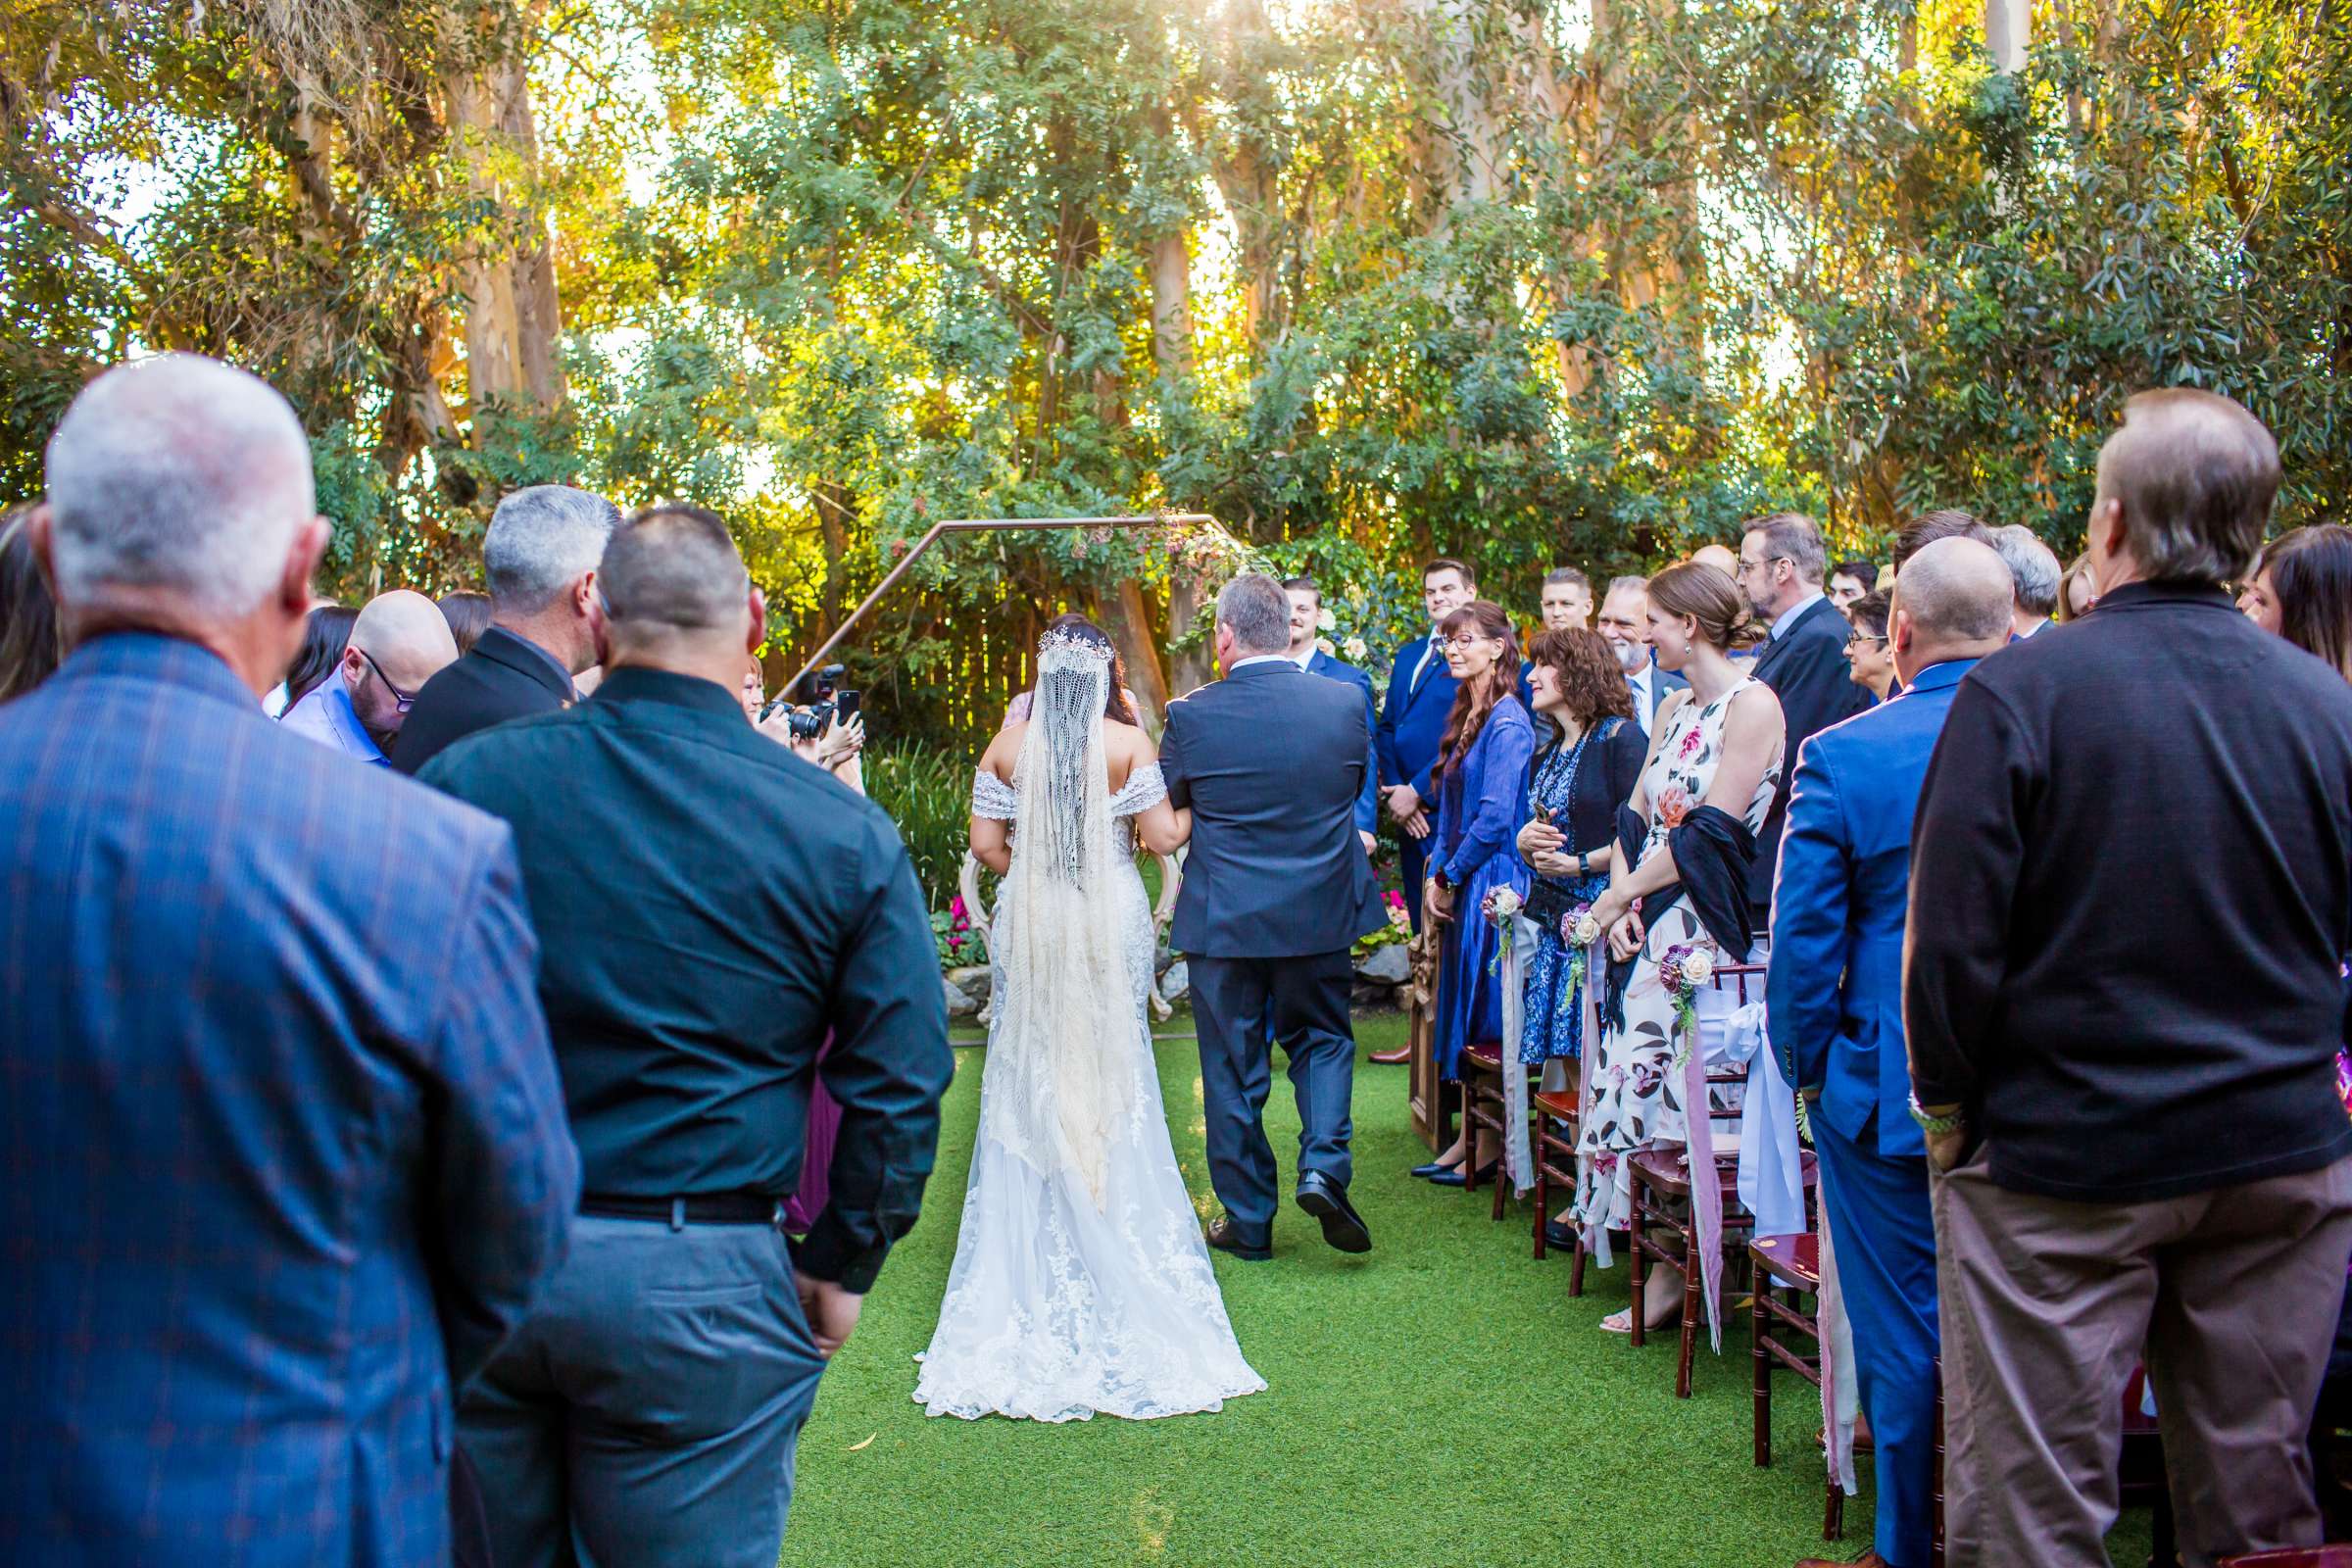 Twin Oaks House & Gardens Wedding Estate Wedding, Stephanie and Ilija Wedding Photo #66 by True Photography